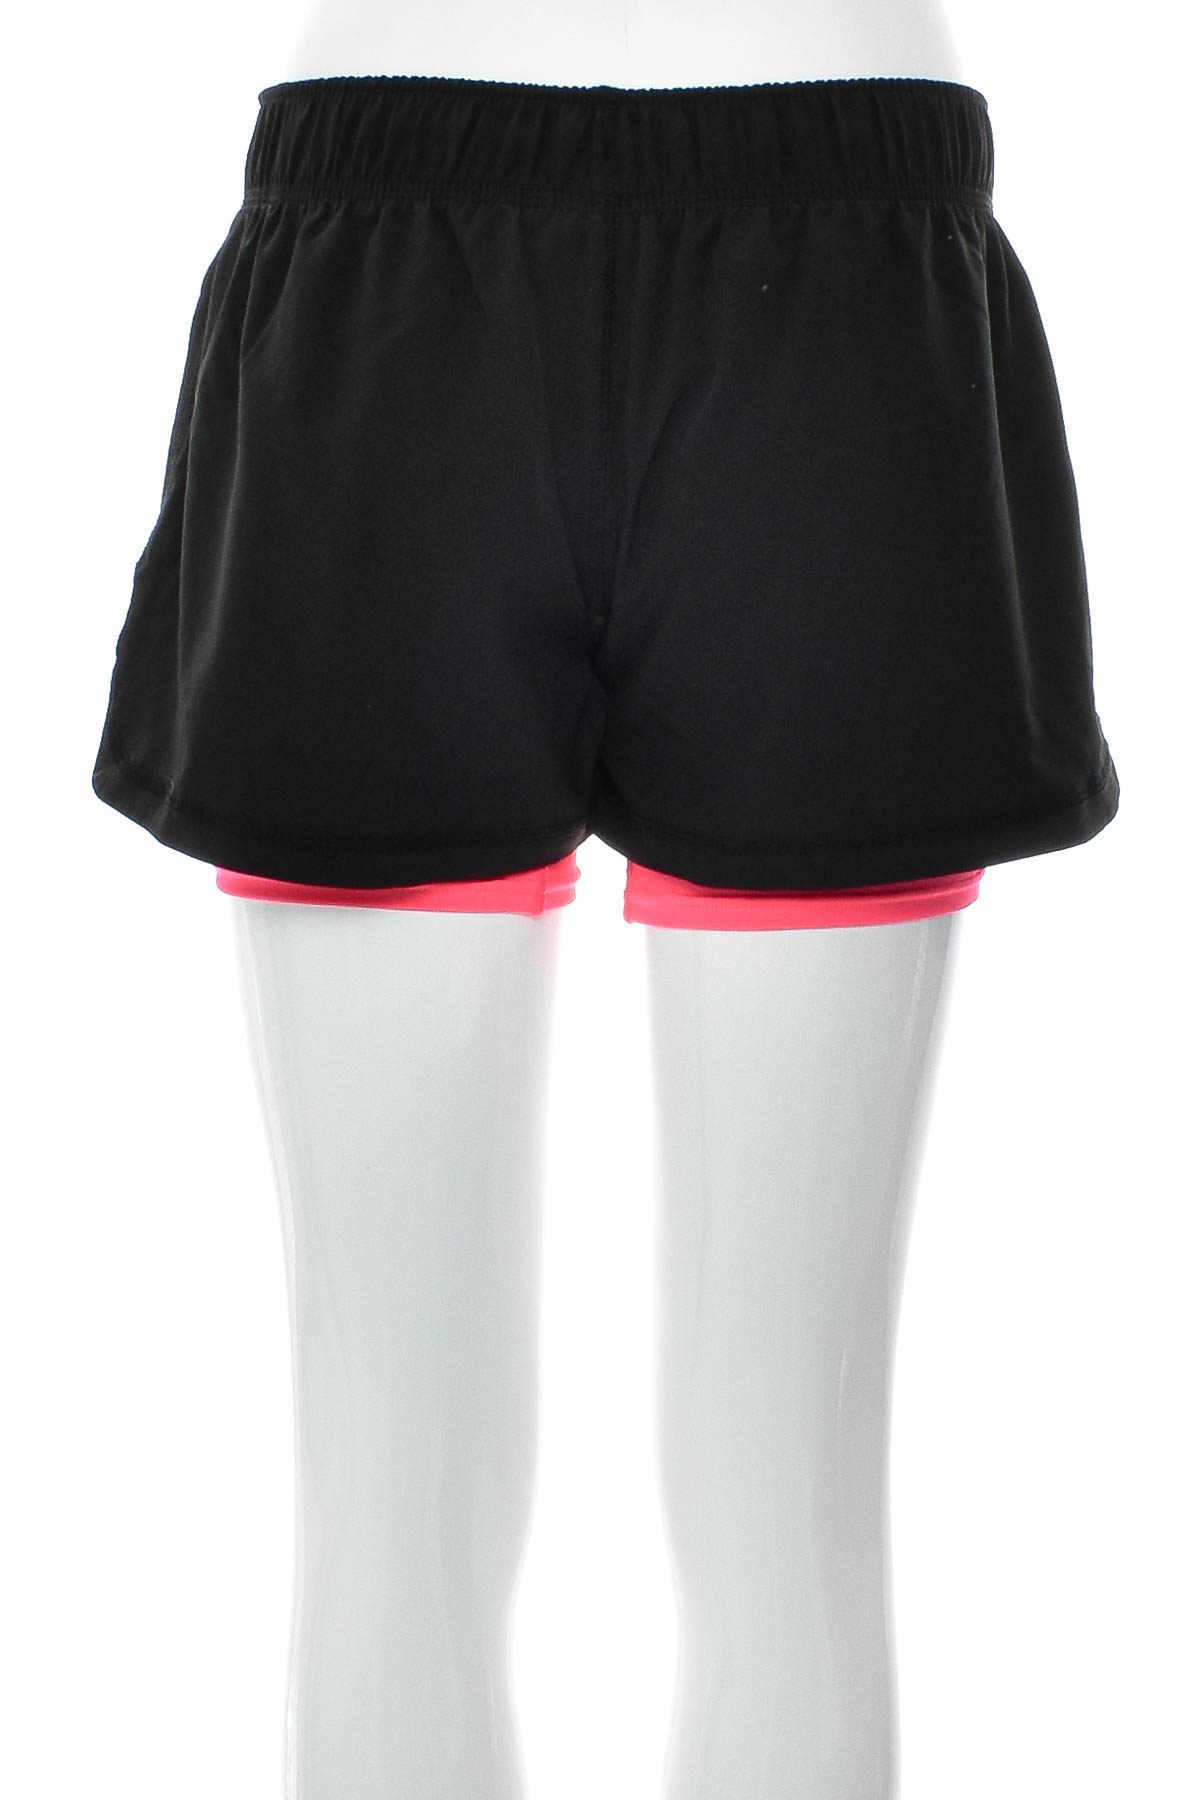 Women's shorts - CtopoGo - 1